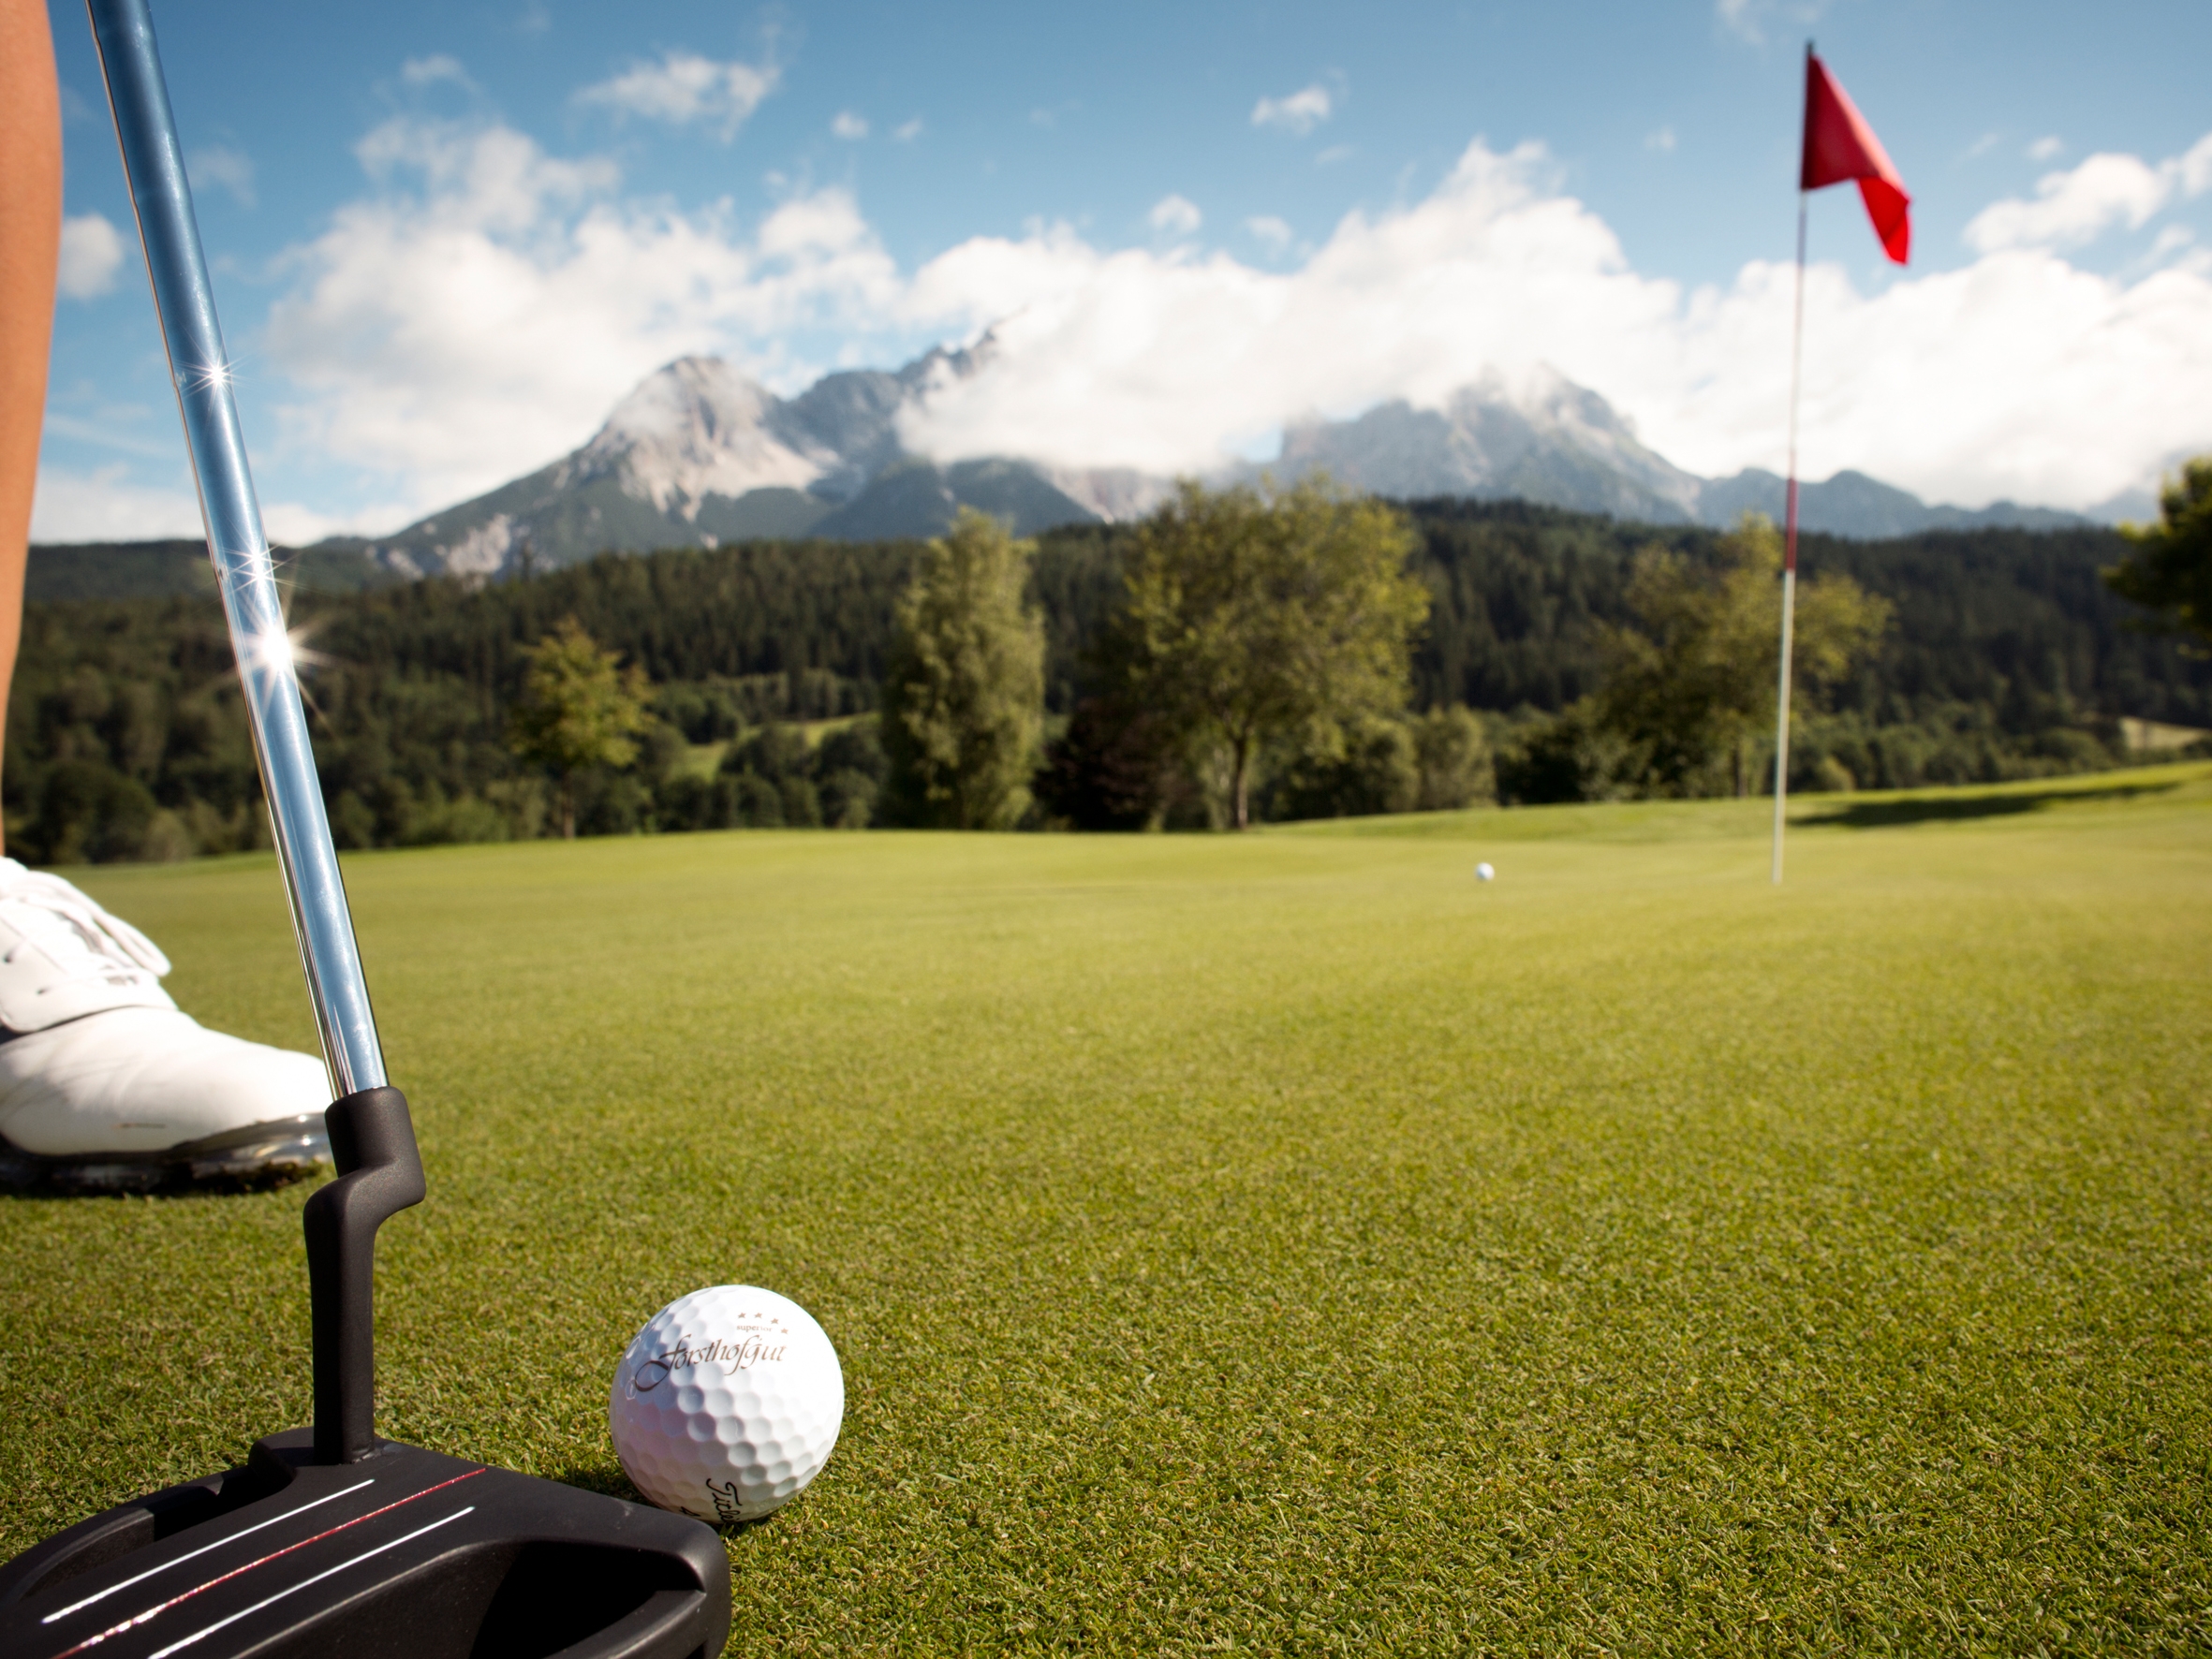 Golfplatz vom Hotel Forsthofgut in Leogang, Österreich.
